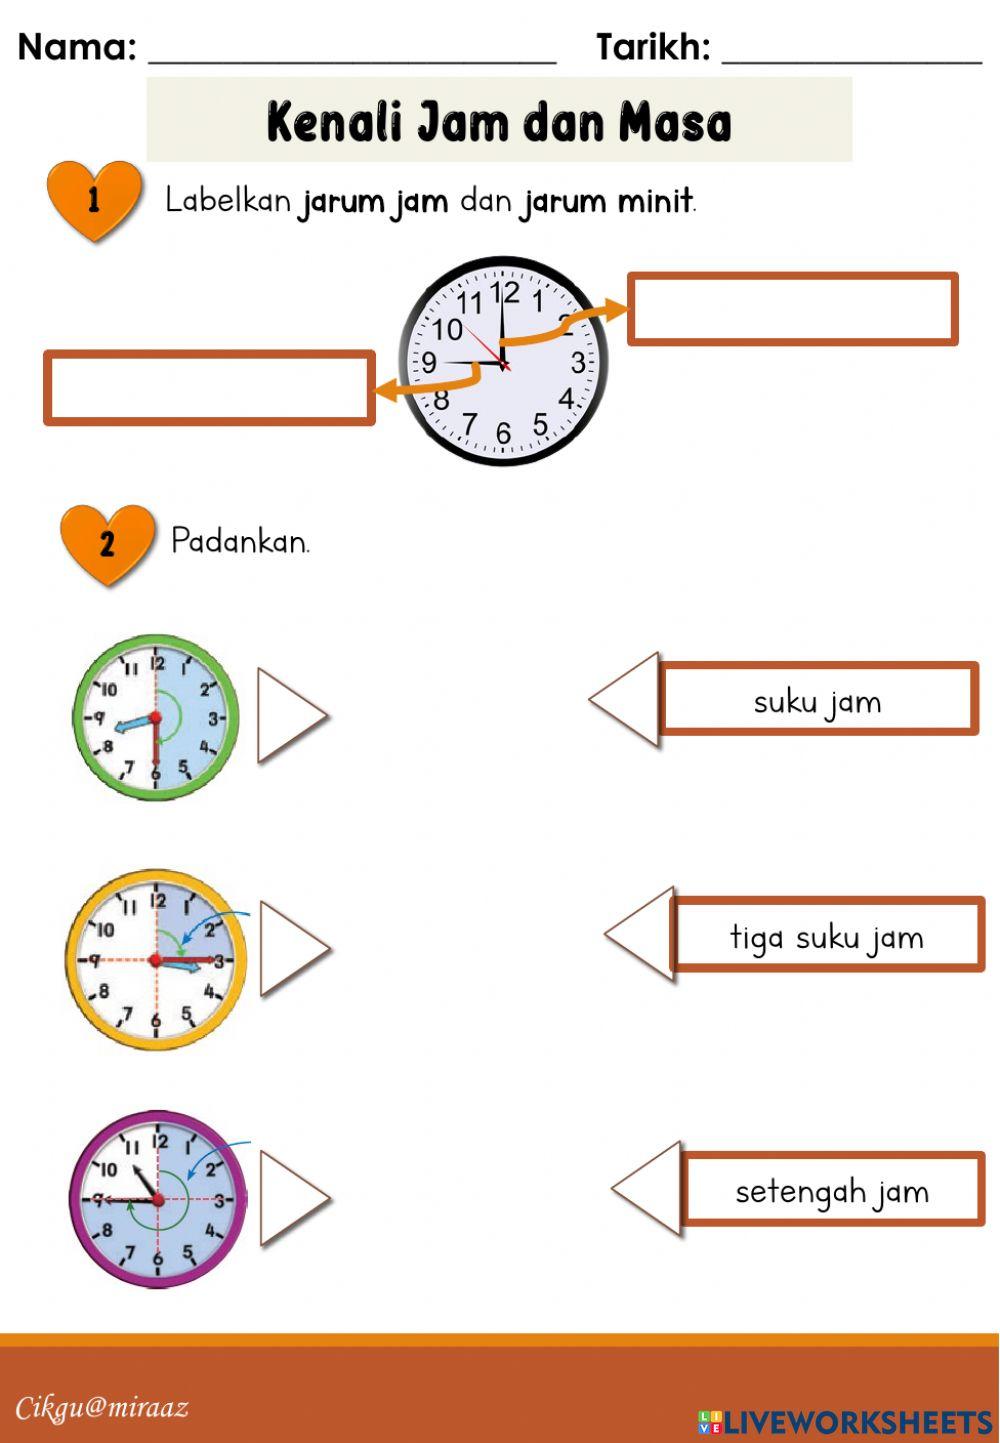 Matematik - Kenali Jam dan Masa